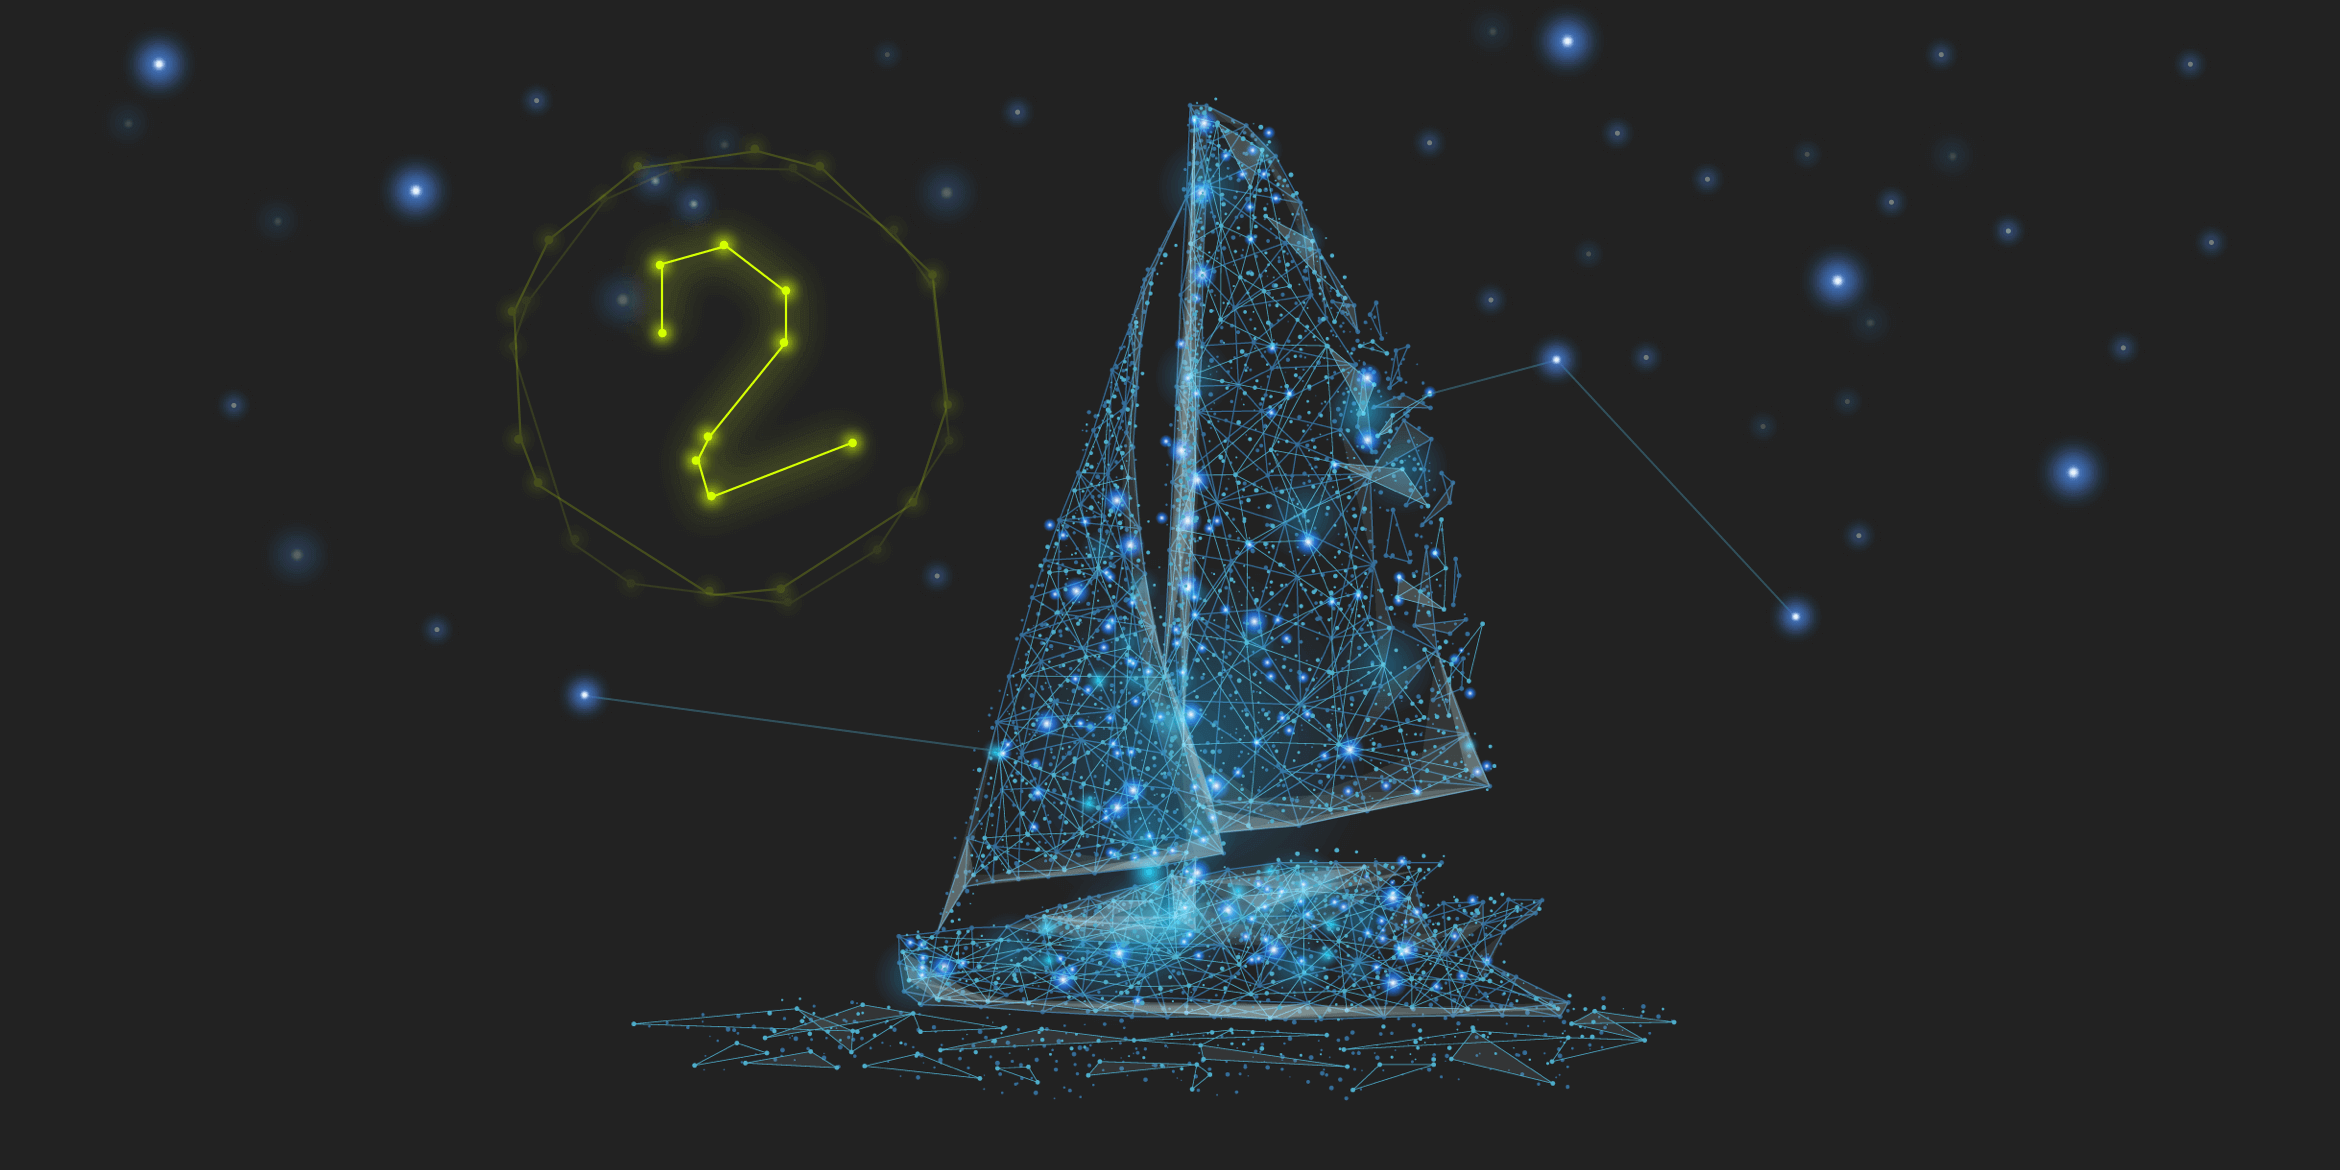 In form eines Sternenbildes mit blauen Sternen dargestelltes Schiff vor einem schwarzen Hintergrund. Links daneben leuchtet eine gelbe 2